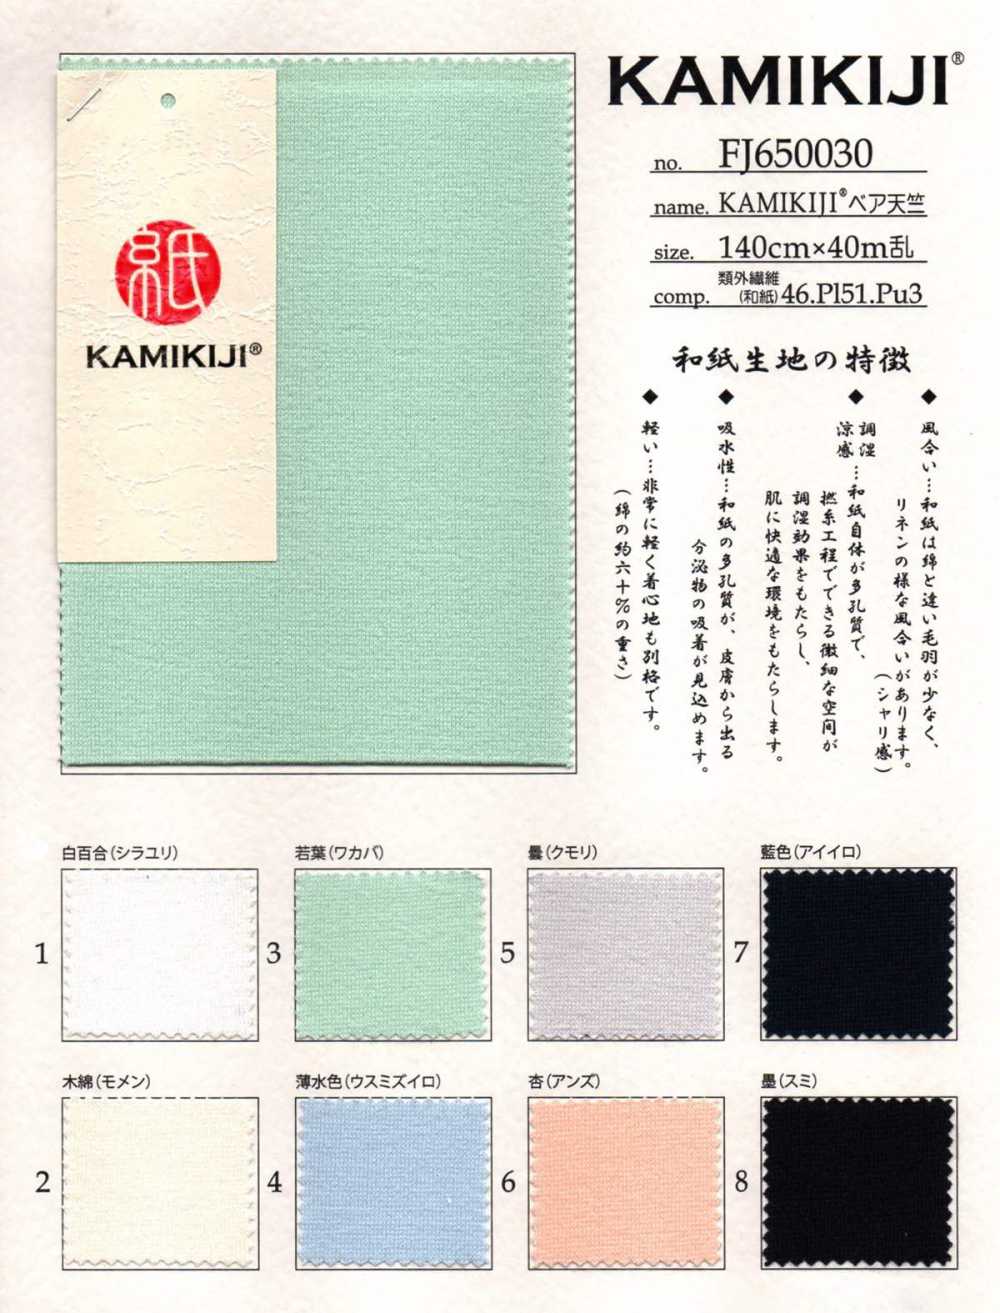 FJ650030 KAMIKIJI® 裸天竺平针织物[面料] Fujisaki Textile